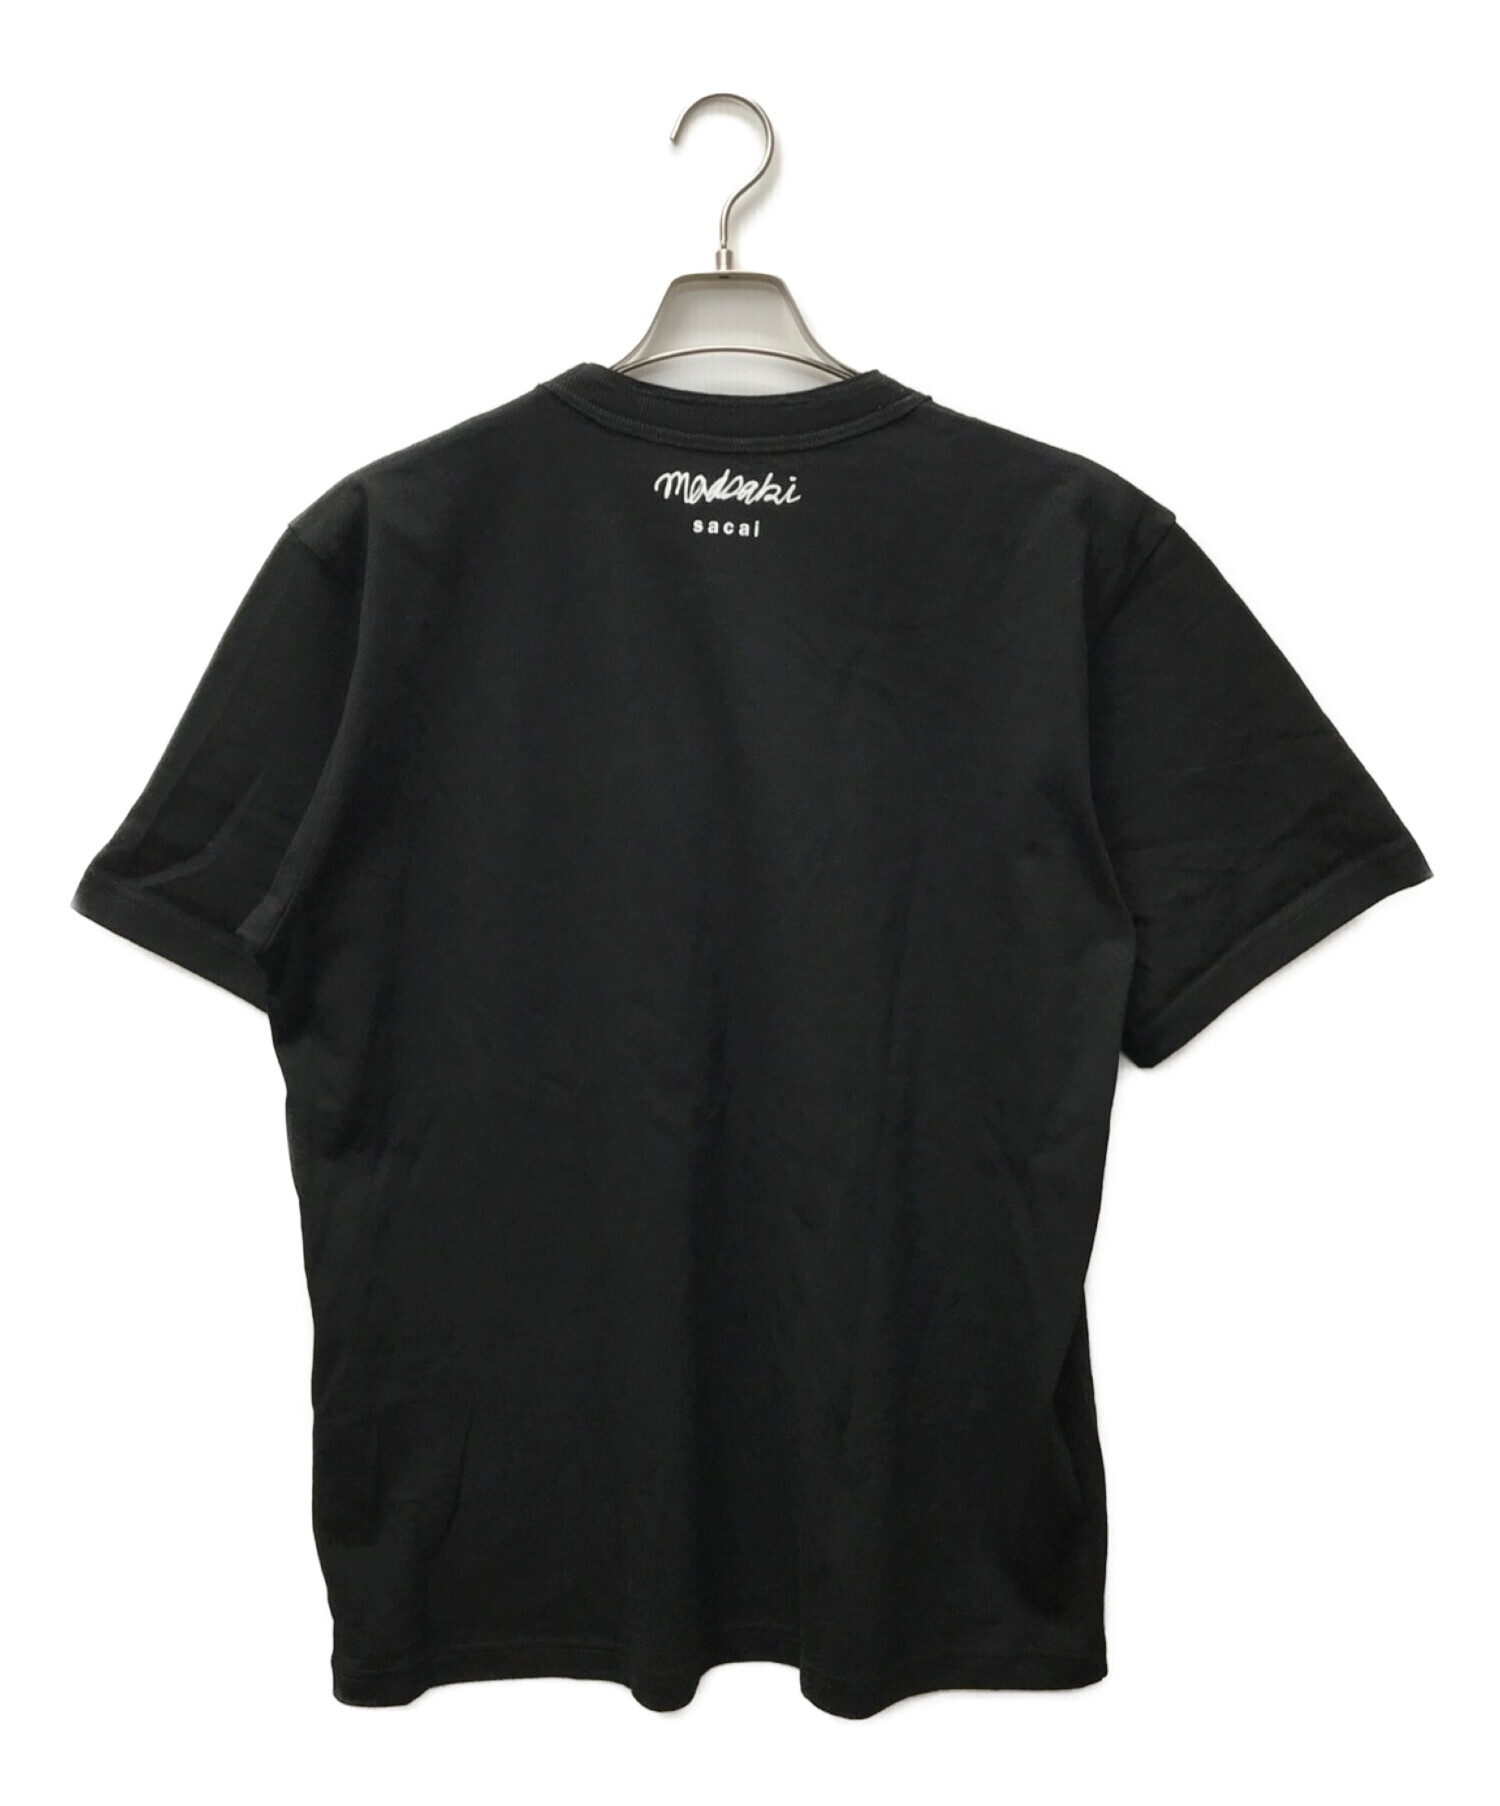 中古・古着通販】sacai (サカイ) MADSAKI Flock Print T-Shirt